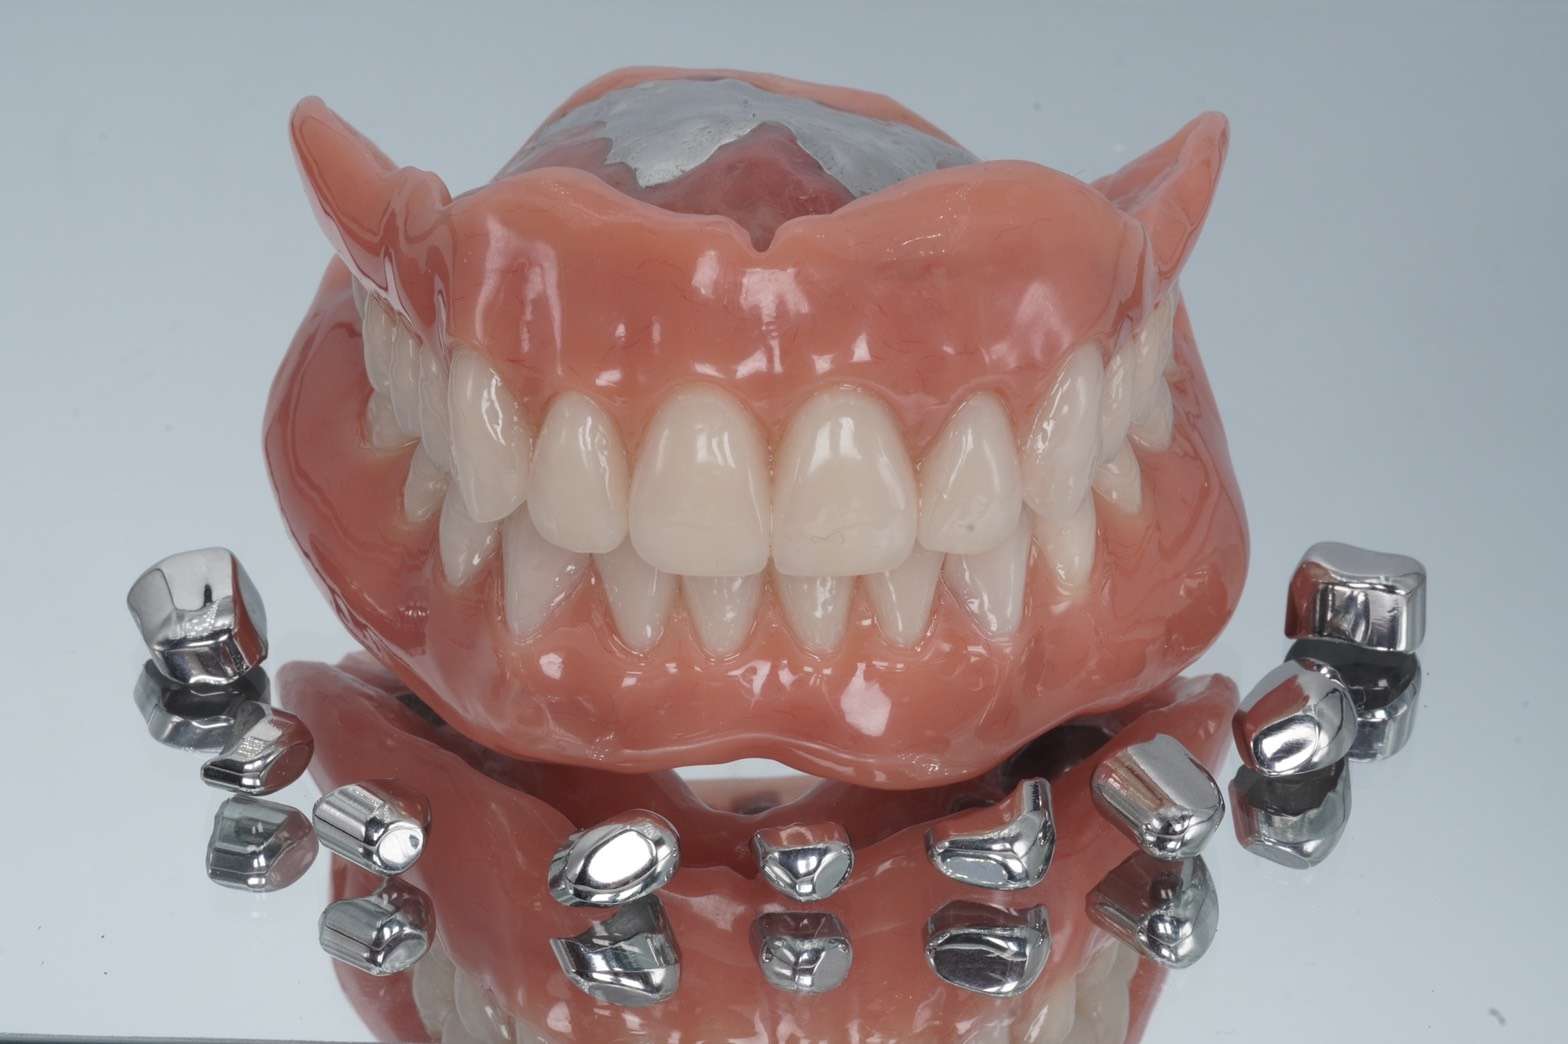 流山の歯科医院でドイツ式入れ歯「テレスコープデンチャー」での治療法を提案しております。